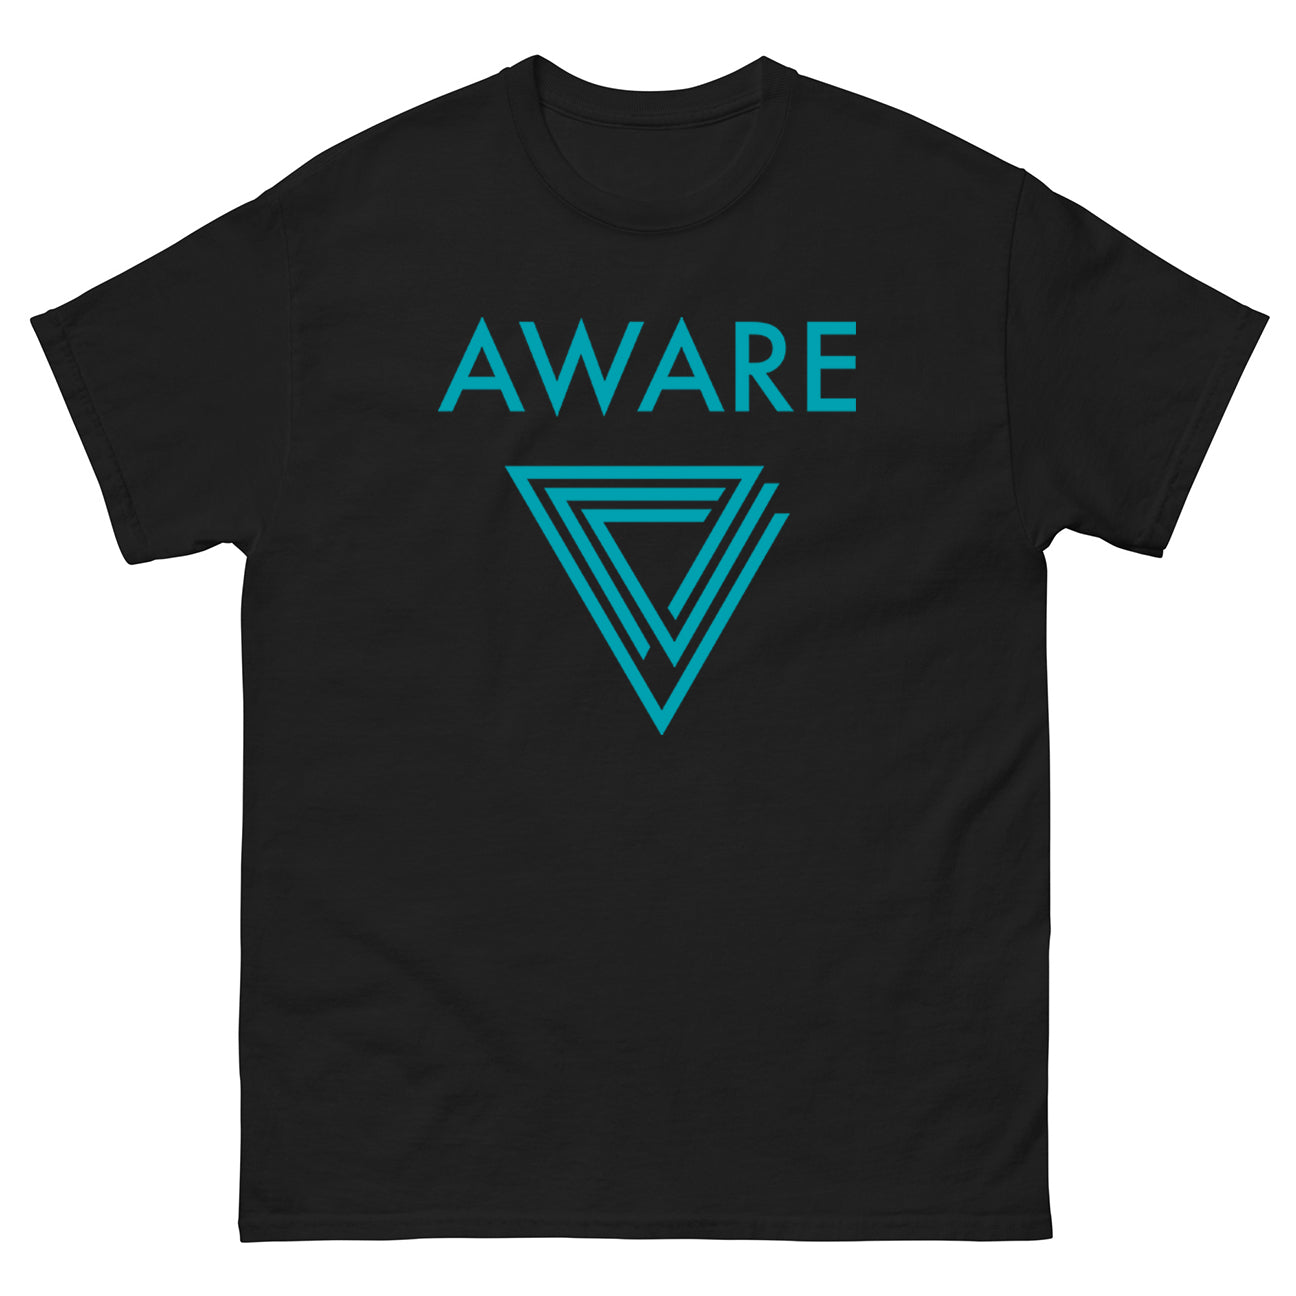 Teal AWARE Infinite Triangle T-Shirt